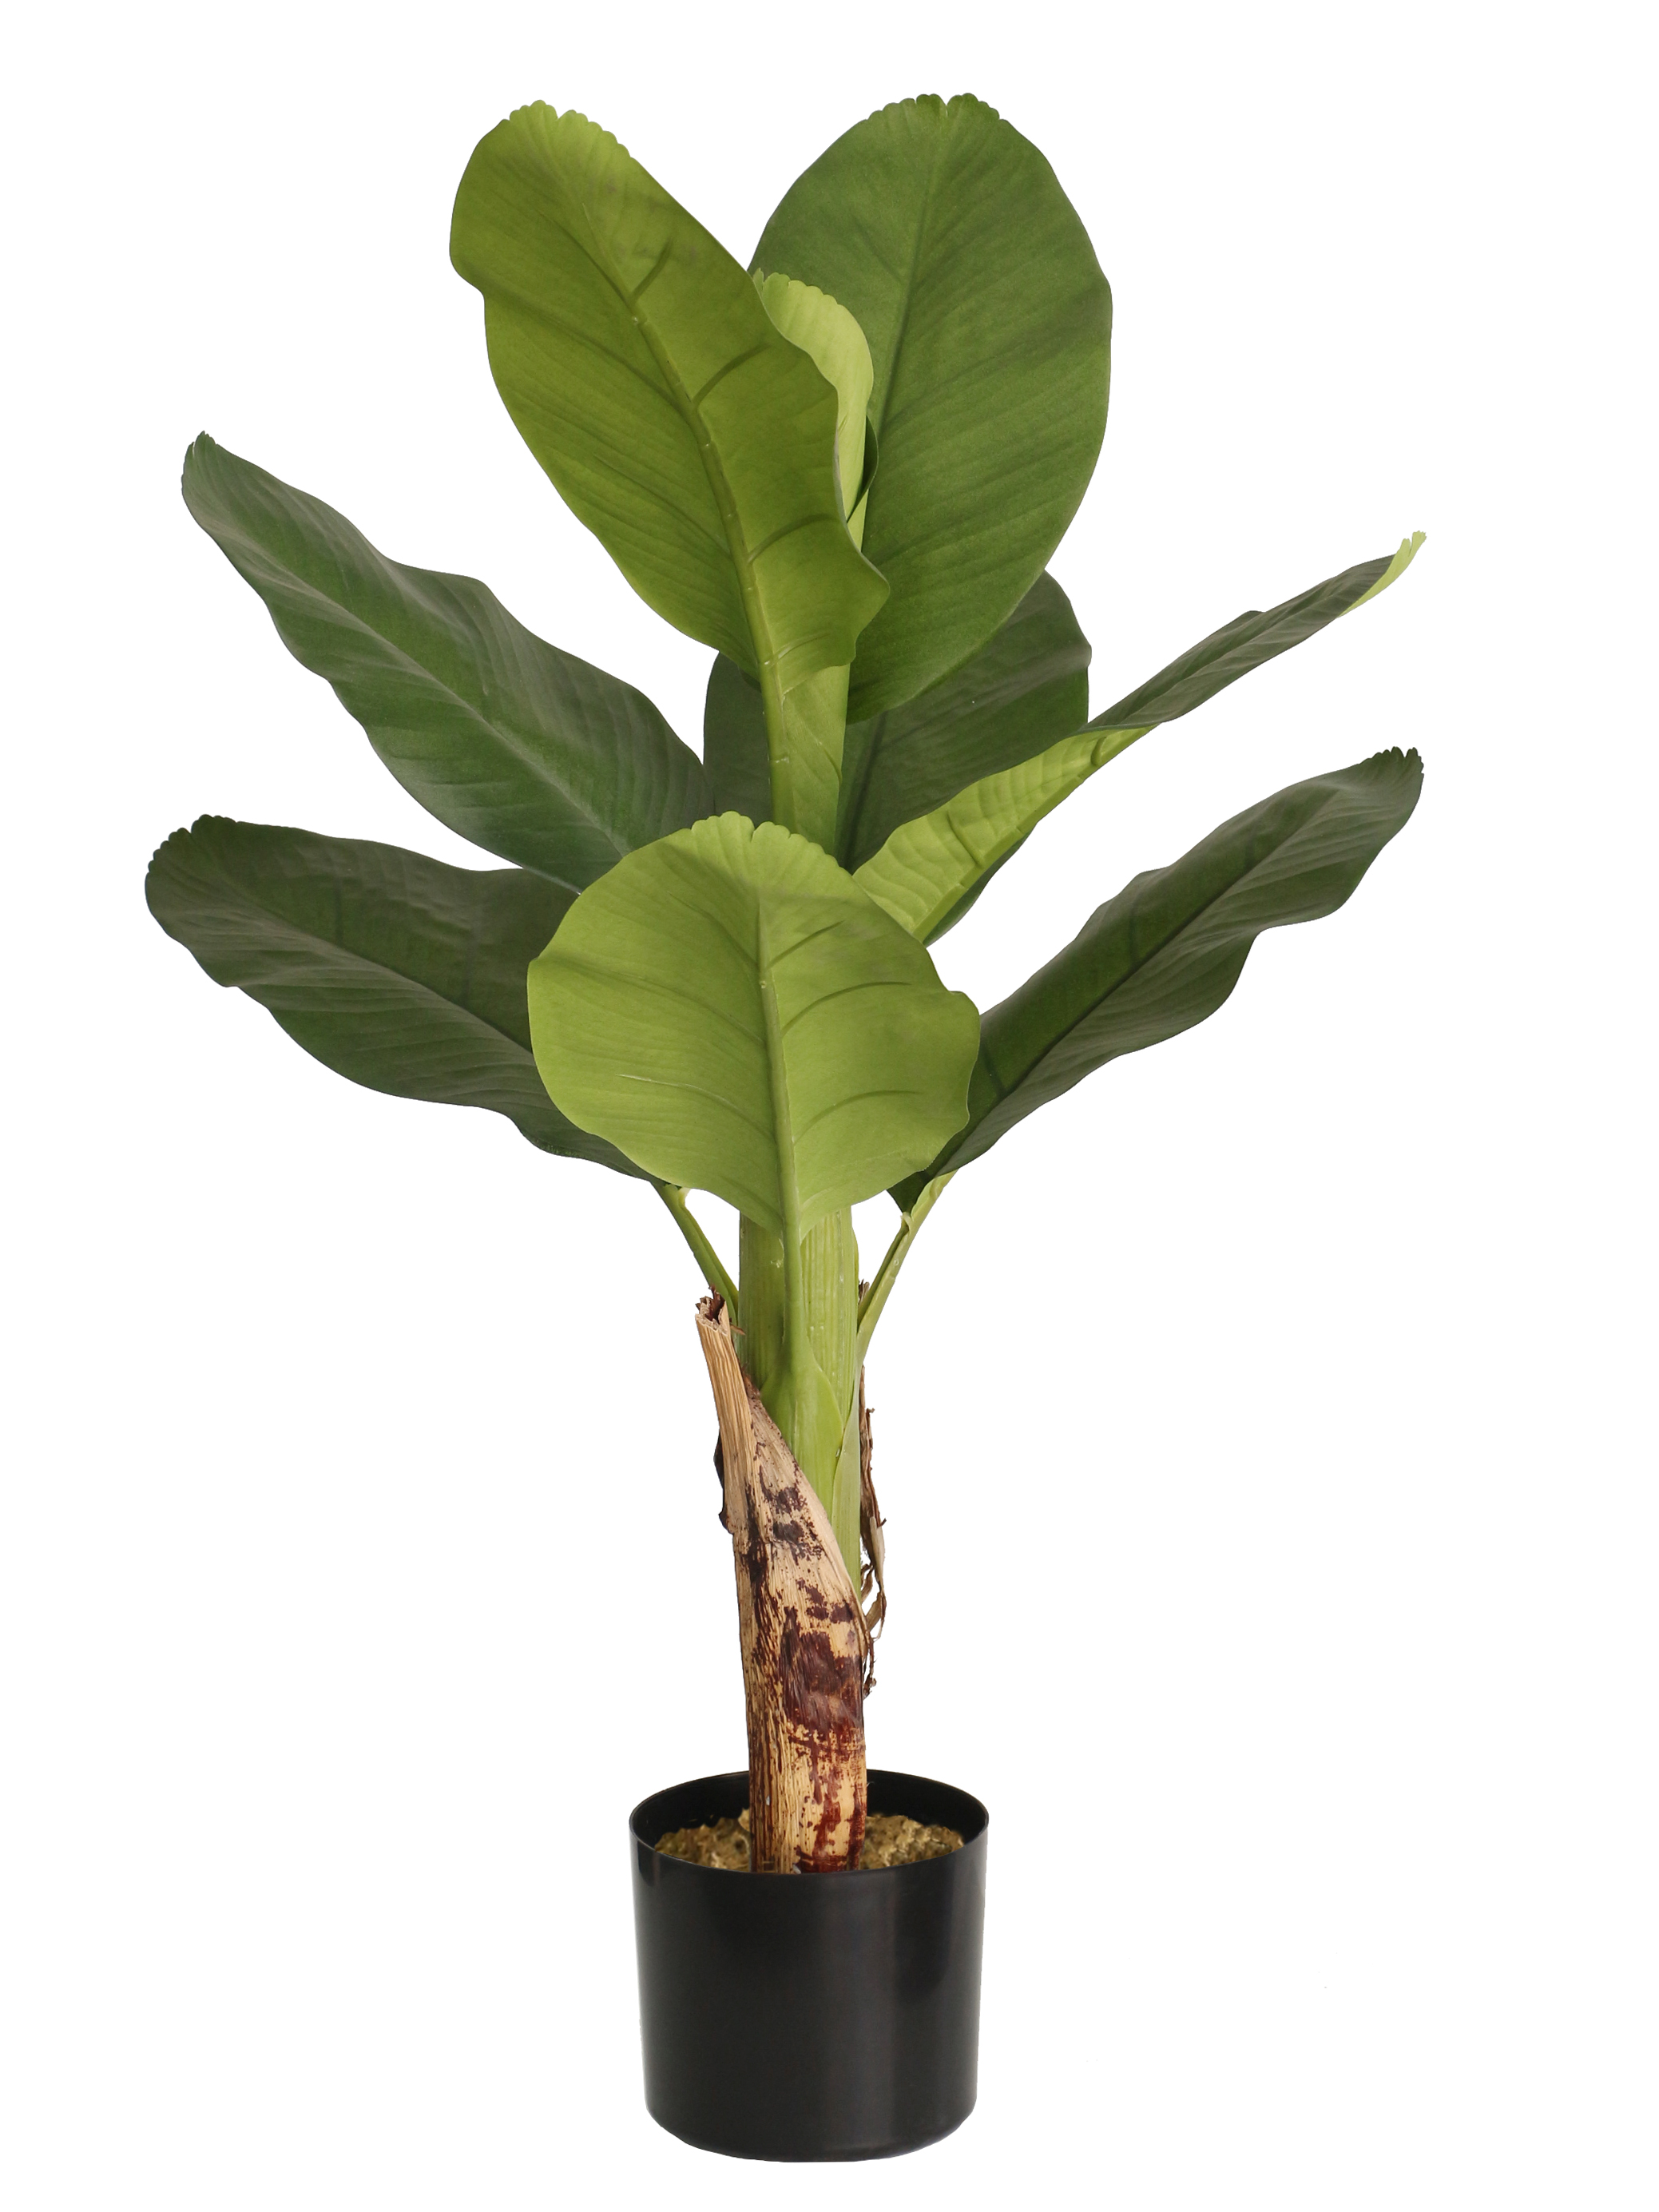 Bananenpalme / Bananenpflanze 85cm LA künstlicher Baum Kunstbaum Kunstpflanze künstliche Pflanzen Banane